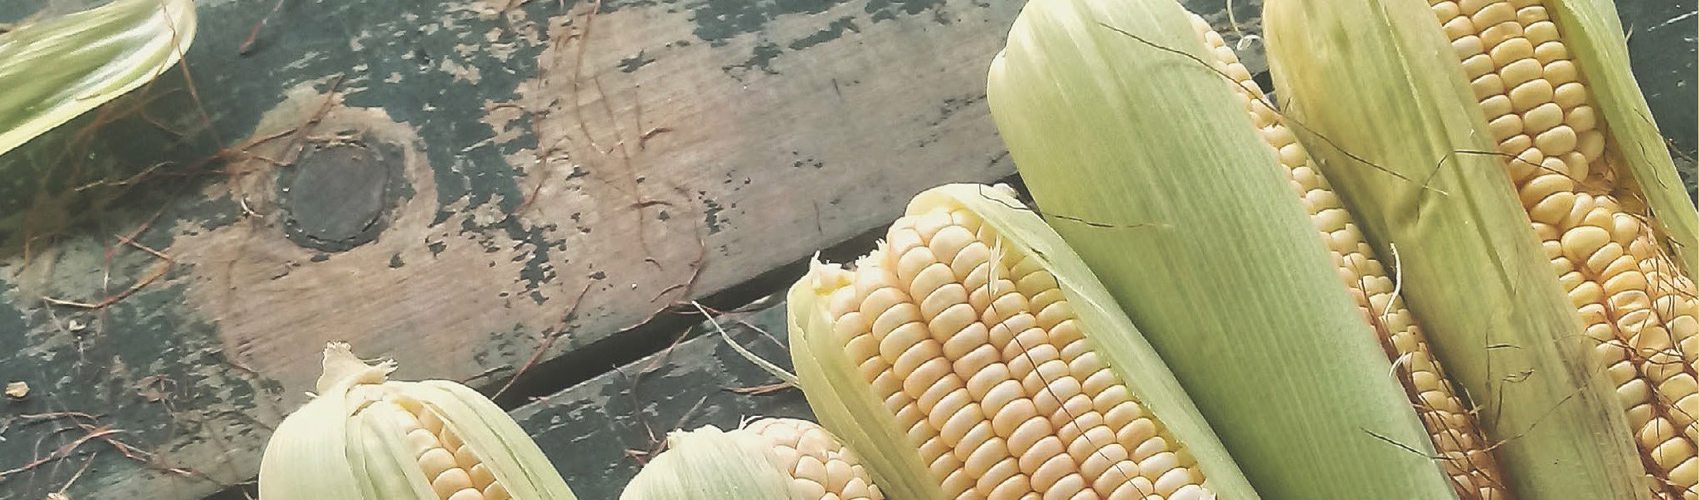 Orgullo y visión nativa del maíz Cacahuazintle